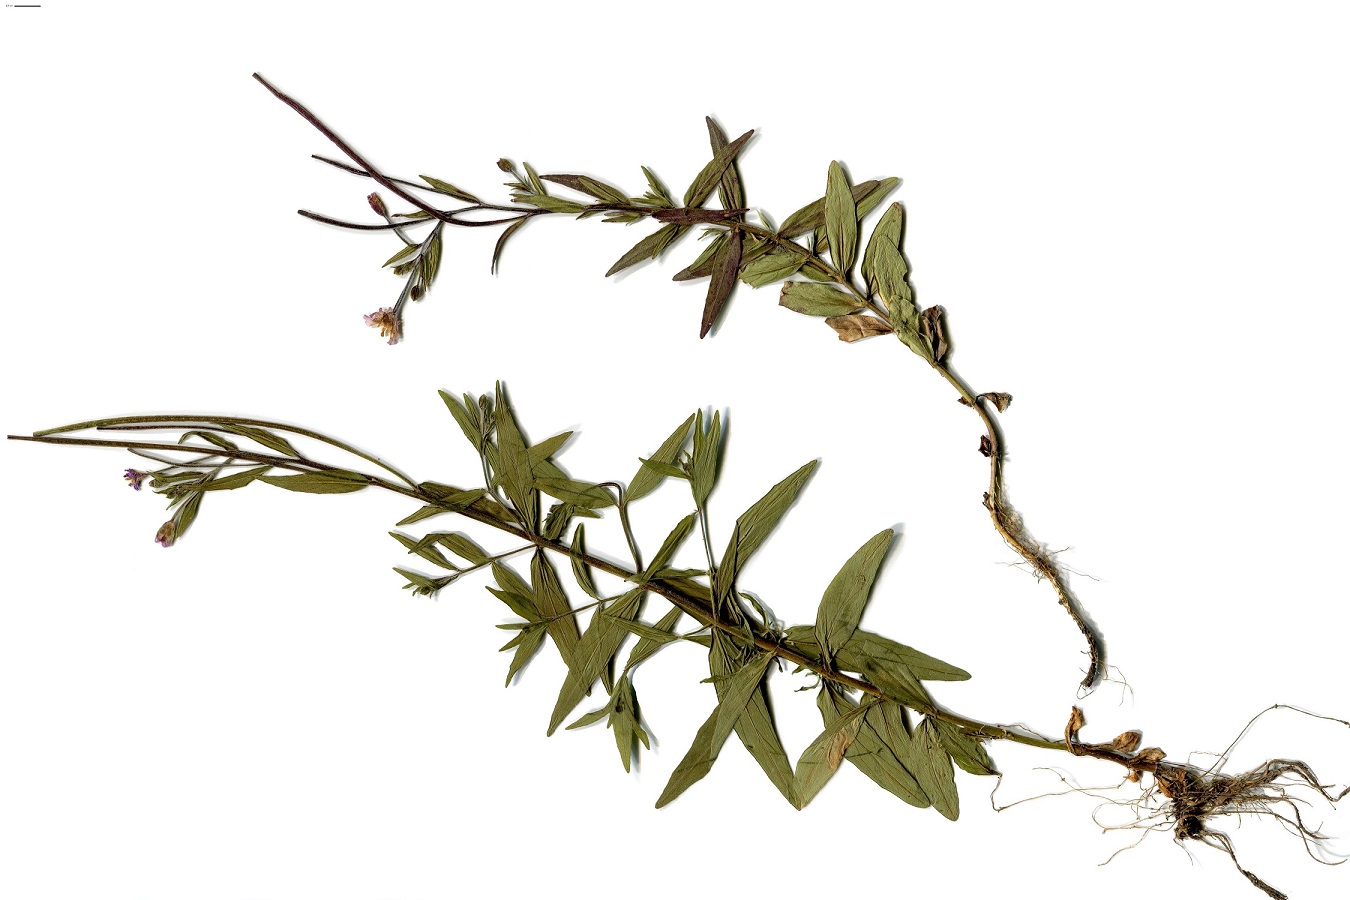 Epilobium obscurum (Onagraceae)